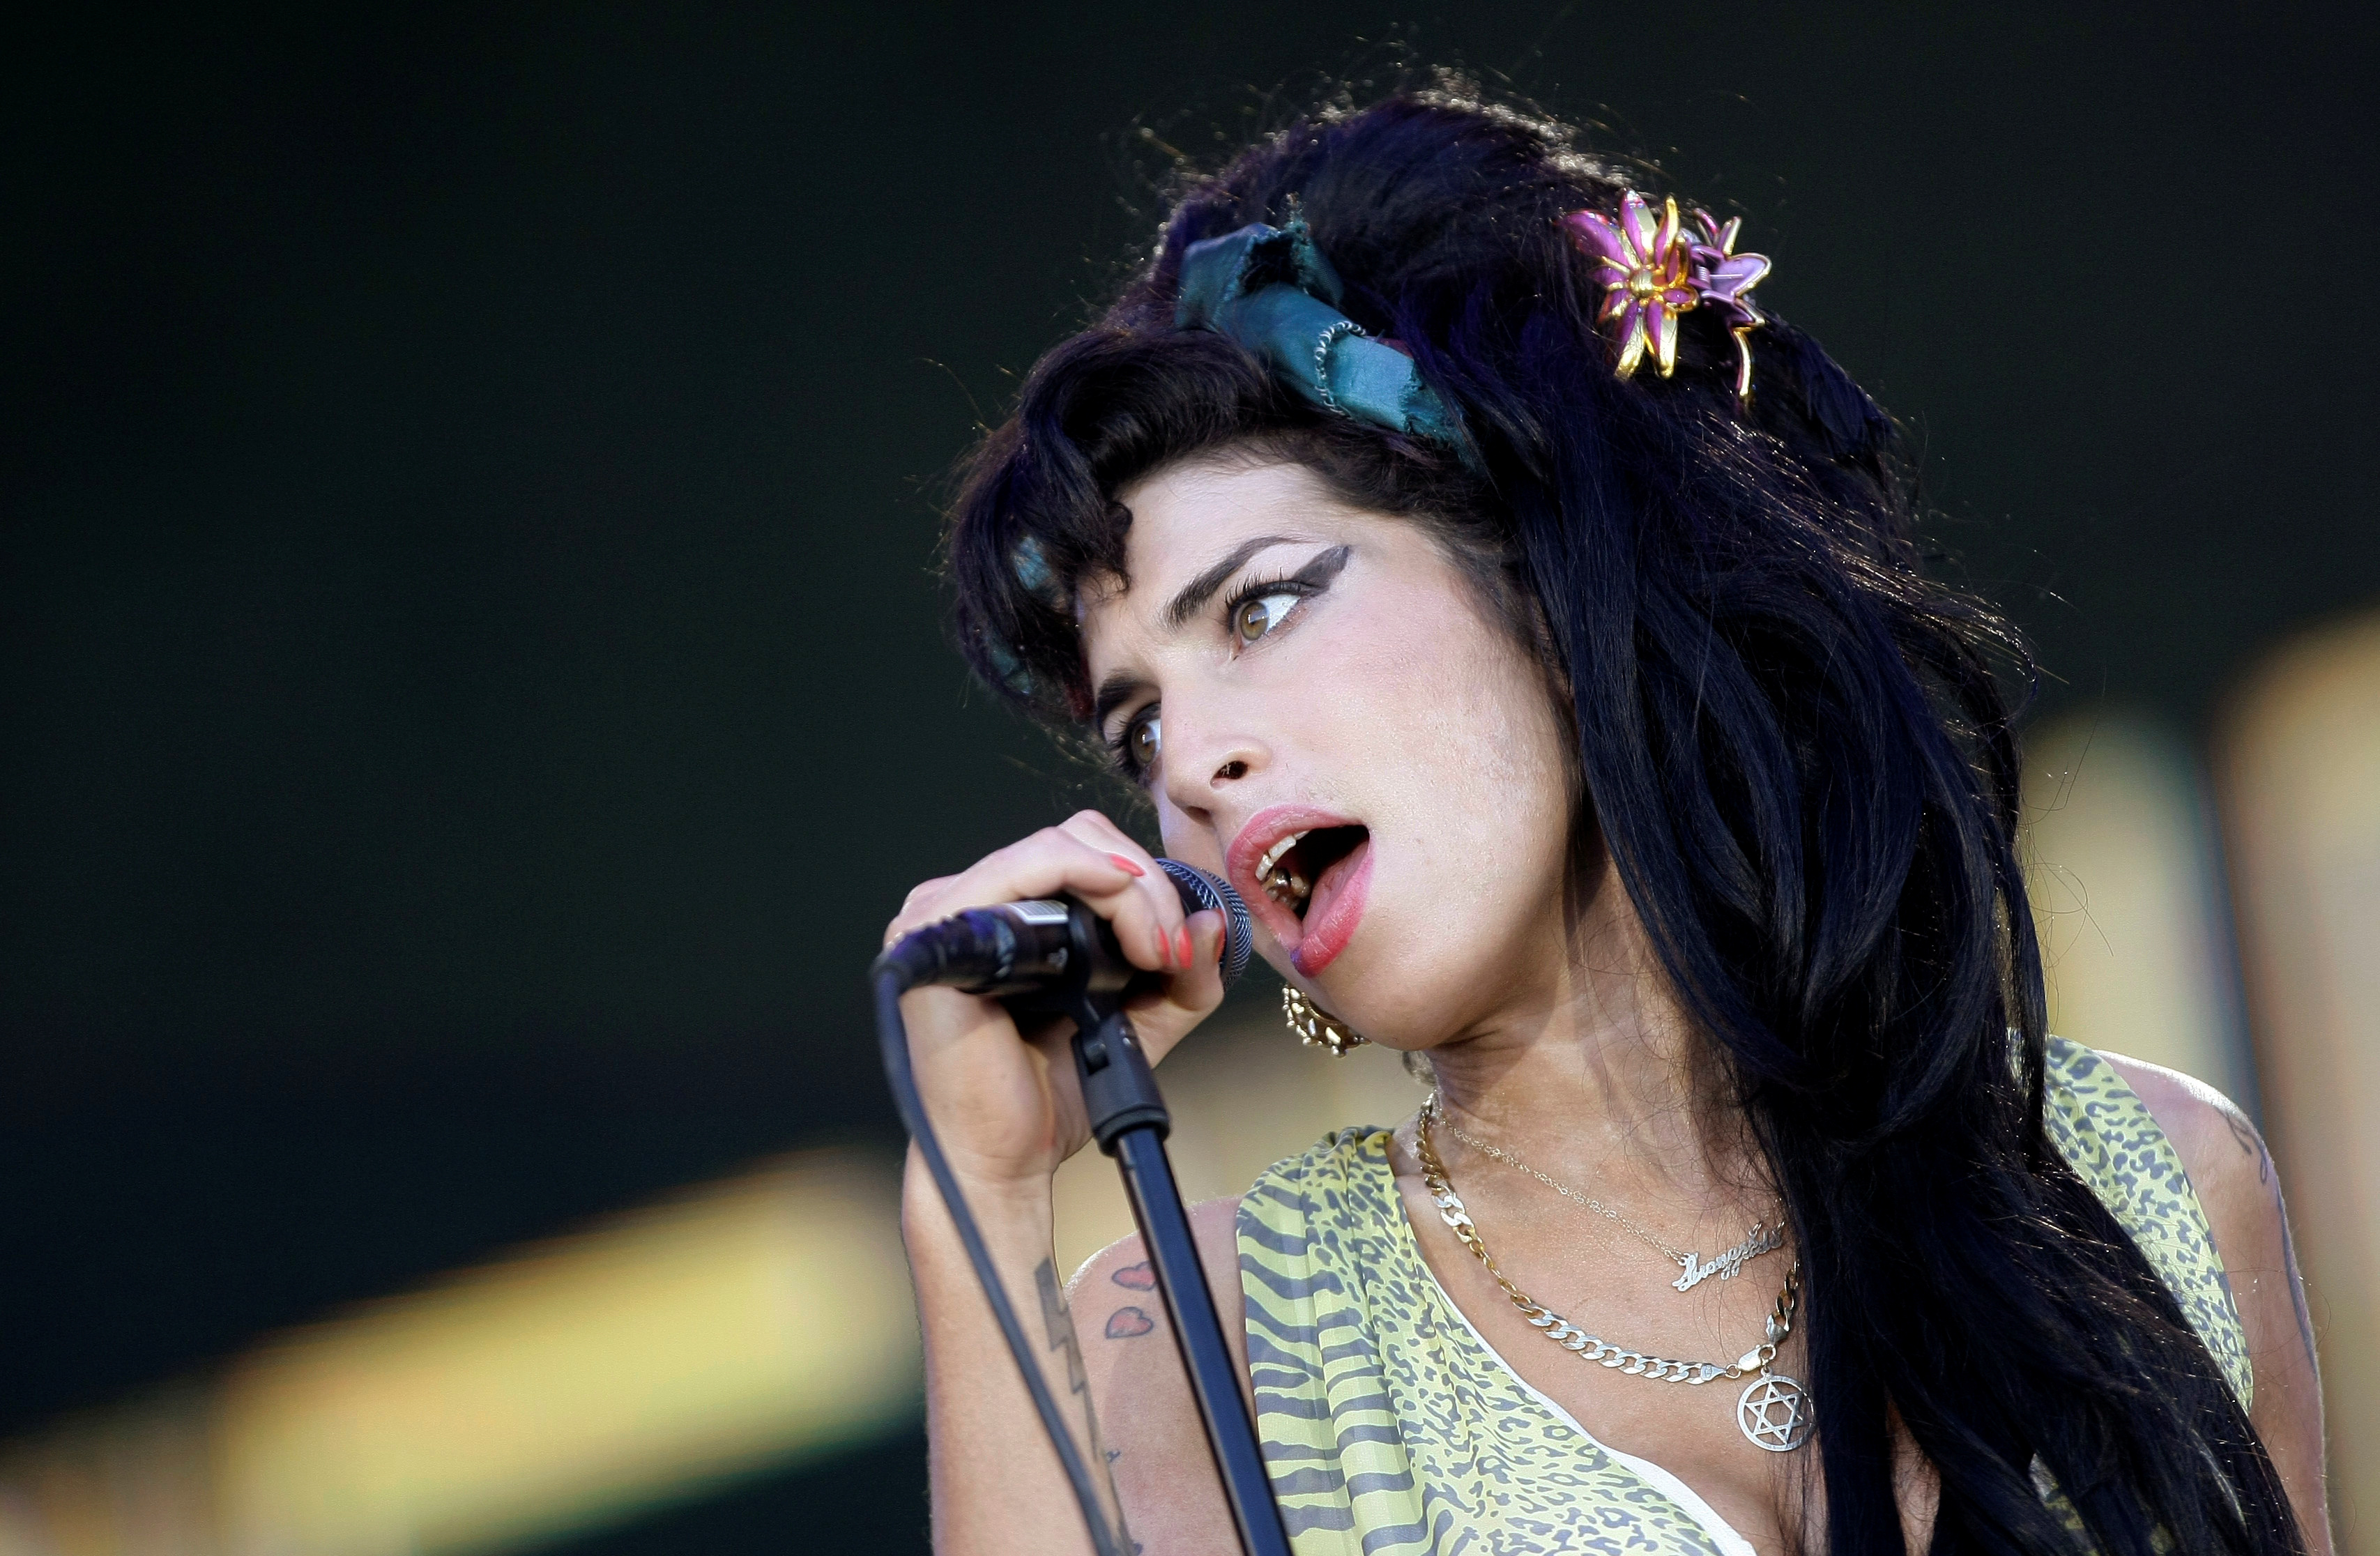 Se conmemoran los diez años de la muerte de Amy Winehouse